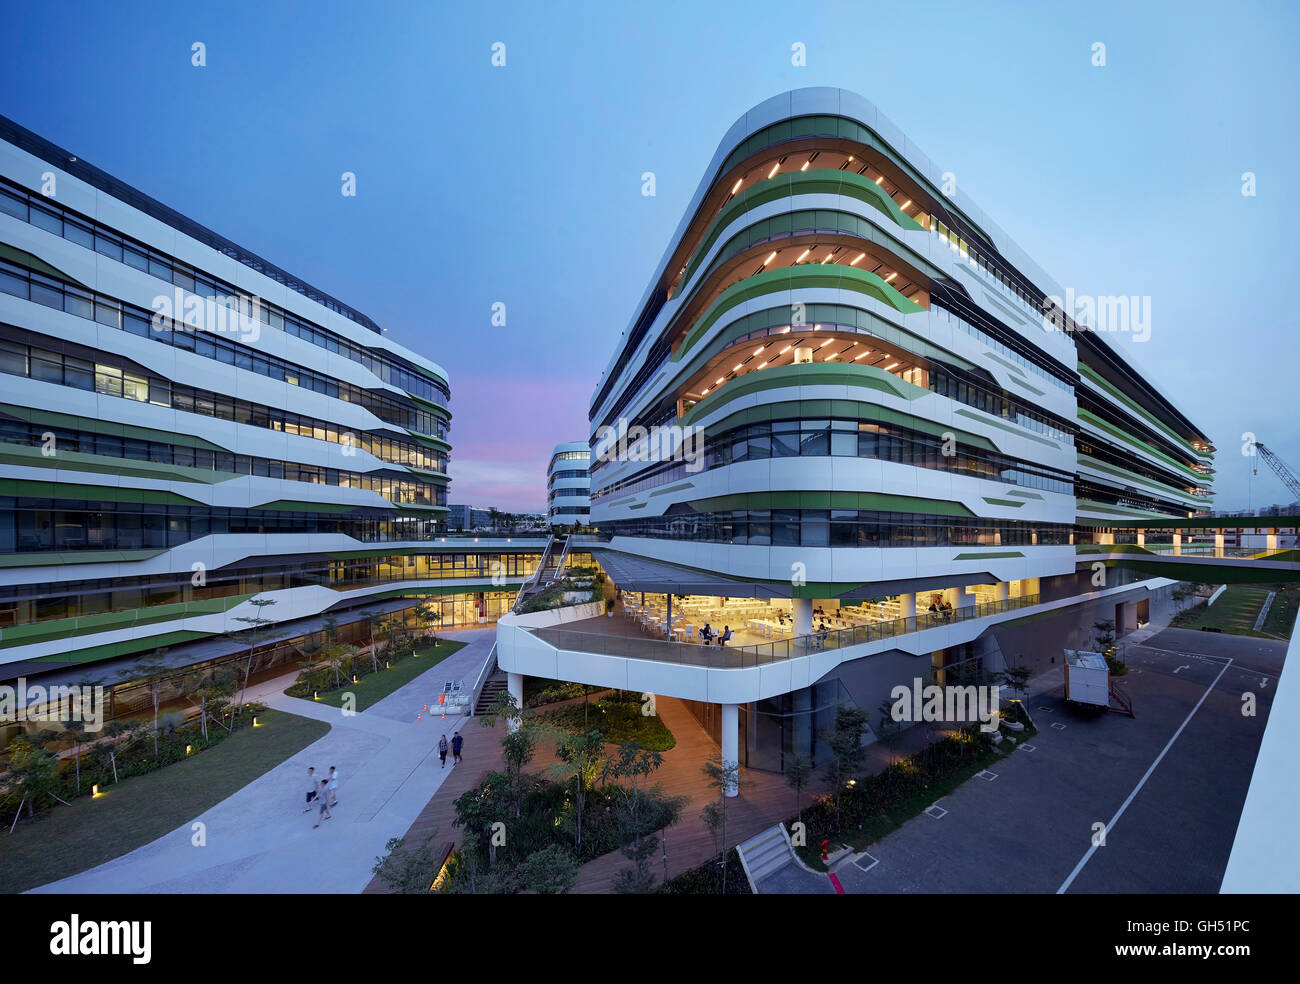 Blick über den Campus mit beleuchteten Innenräumen. Singapur-Hochschule für Technik und Design, Singapur, Singapur. Architekt: UNStudio, 2015. Stockfoto